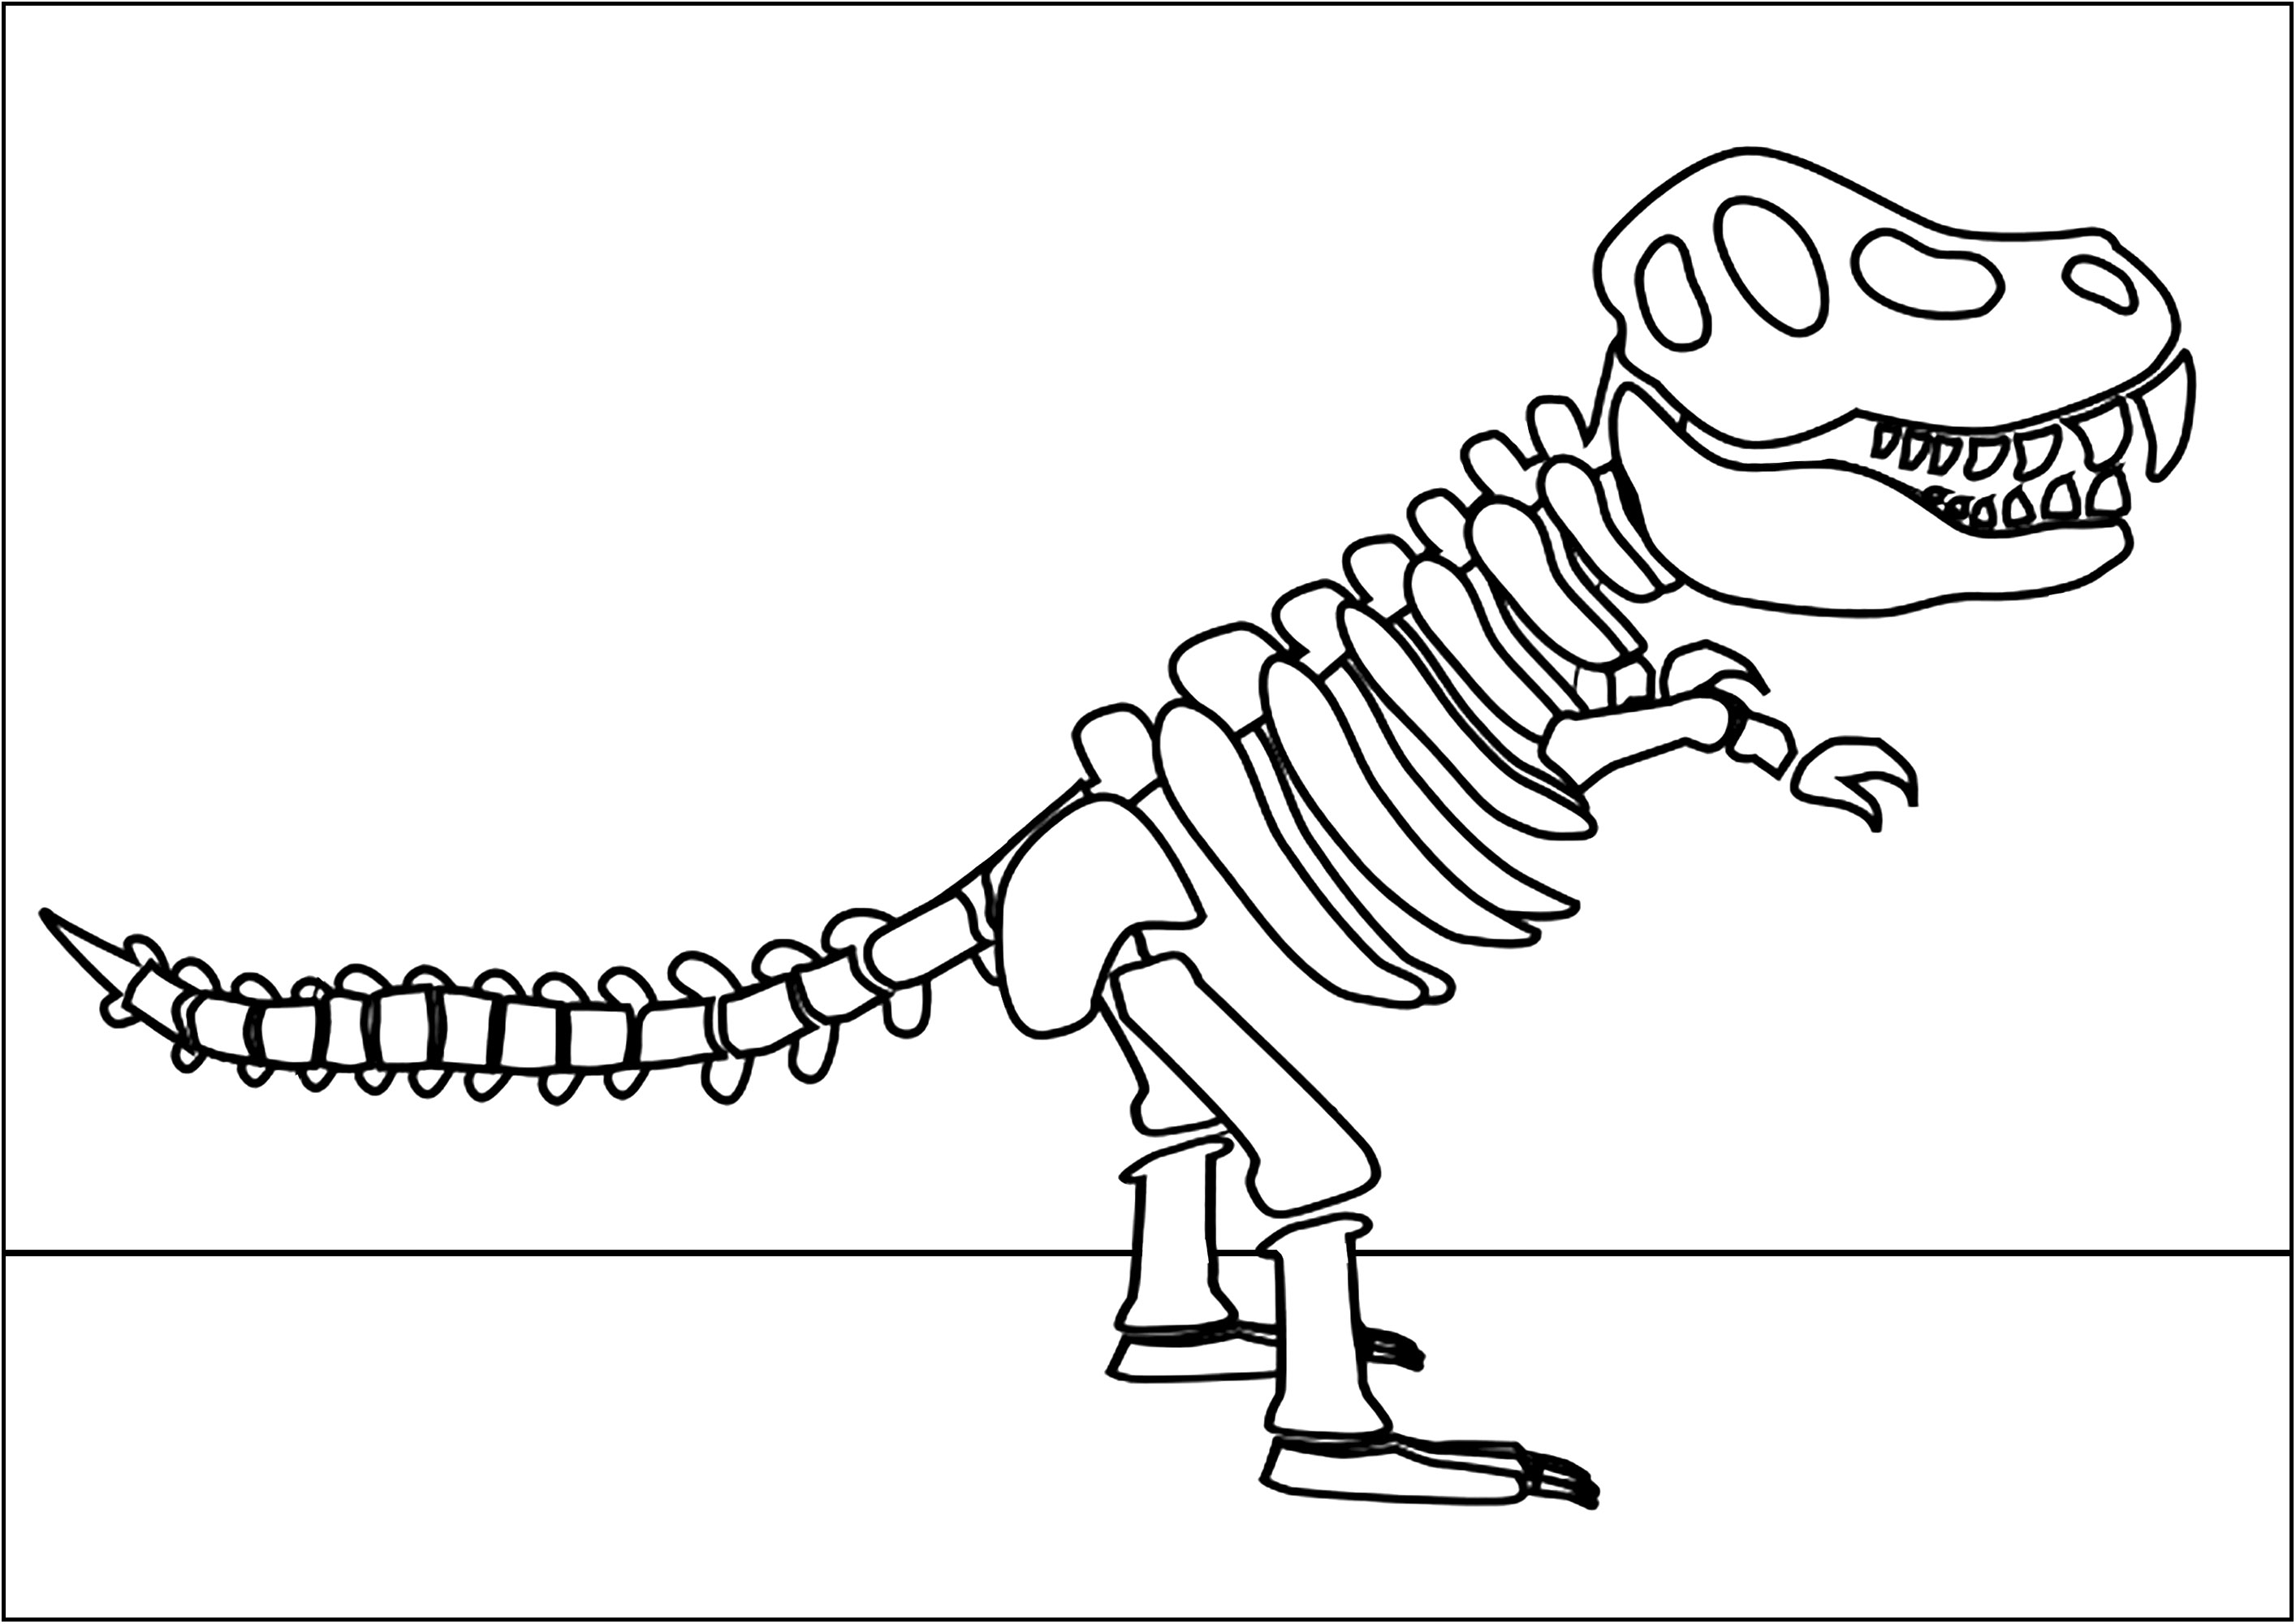 Simple Dibujos para colorear para niños gratis de Dinossauros